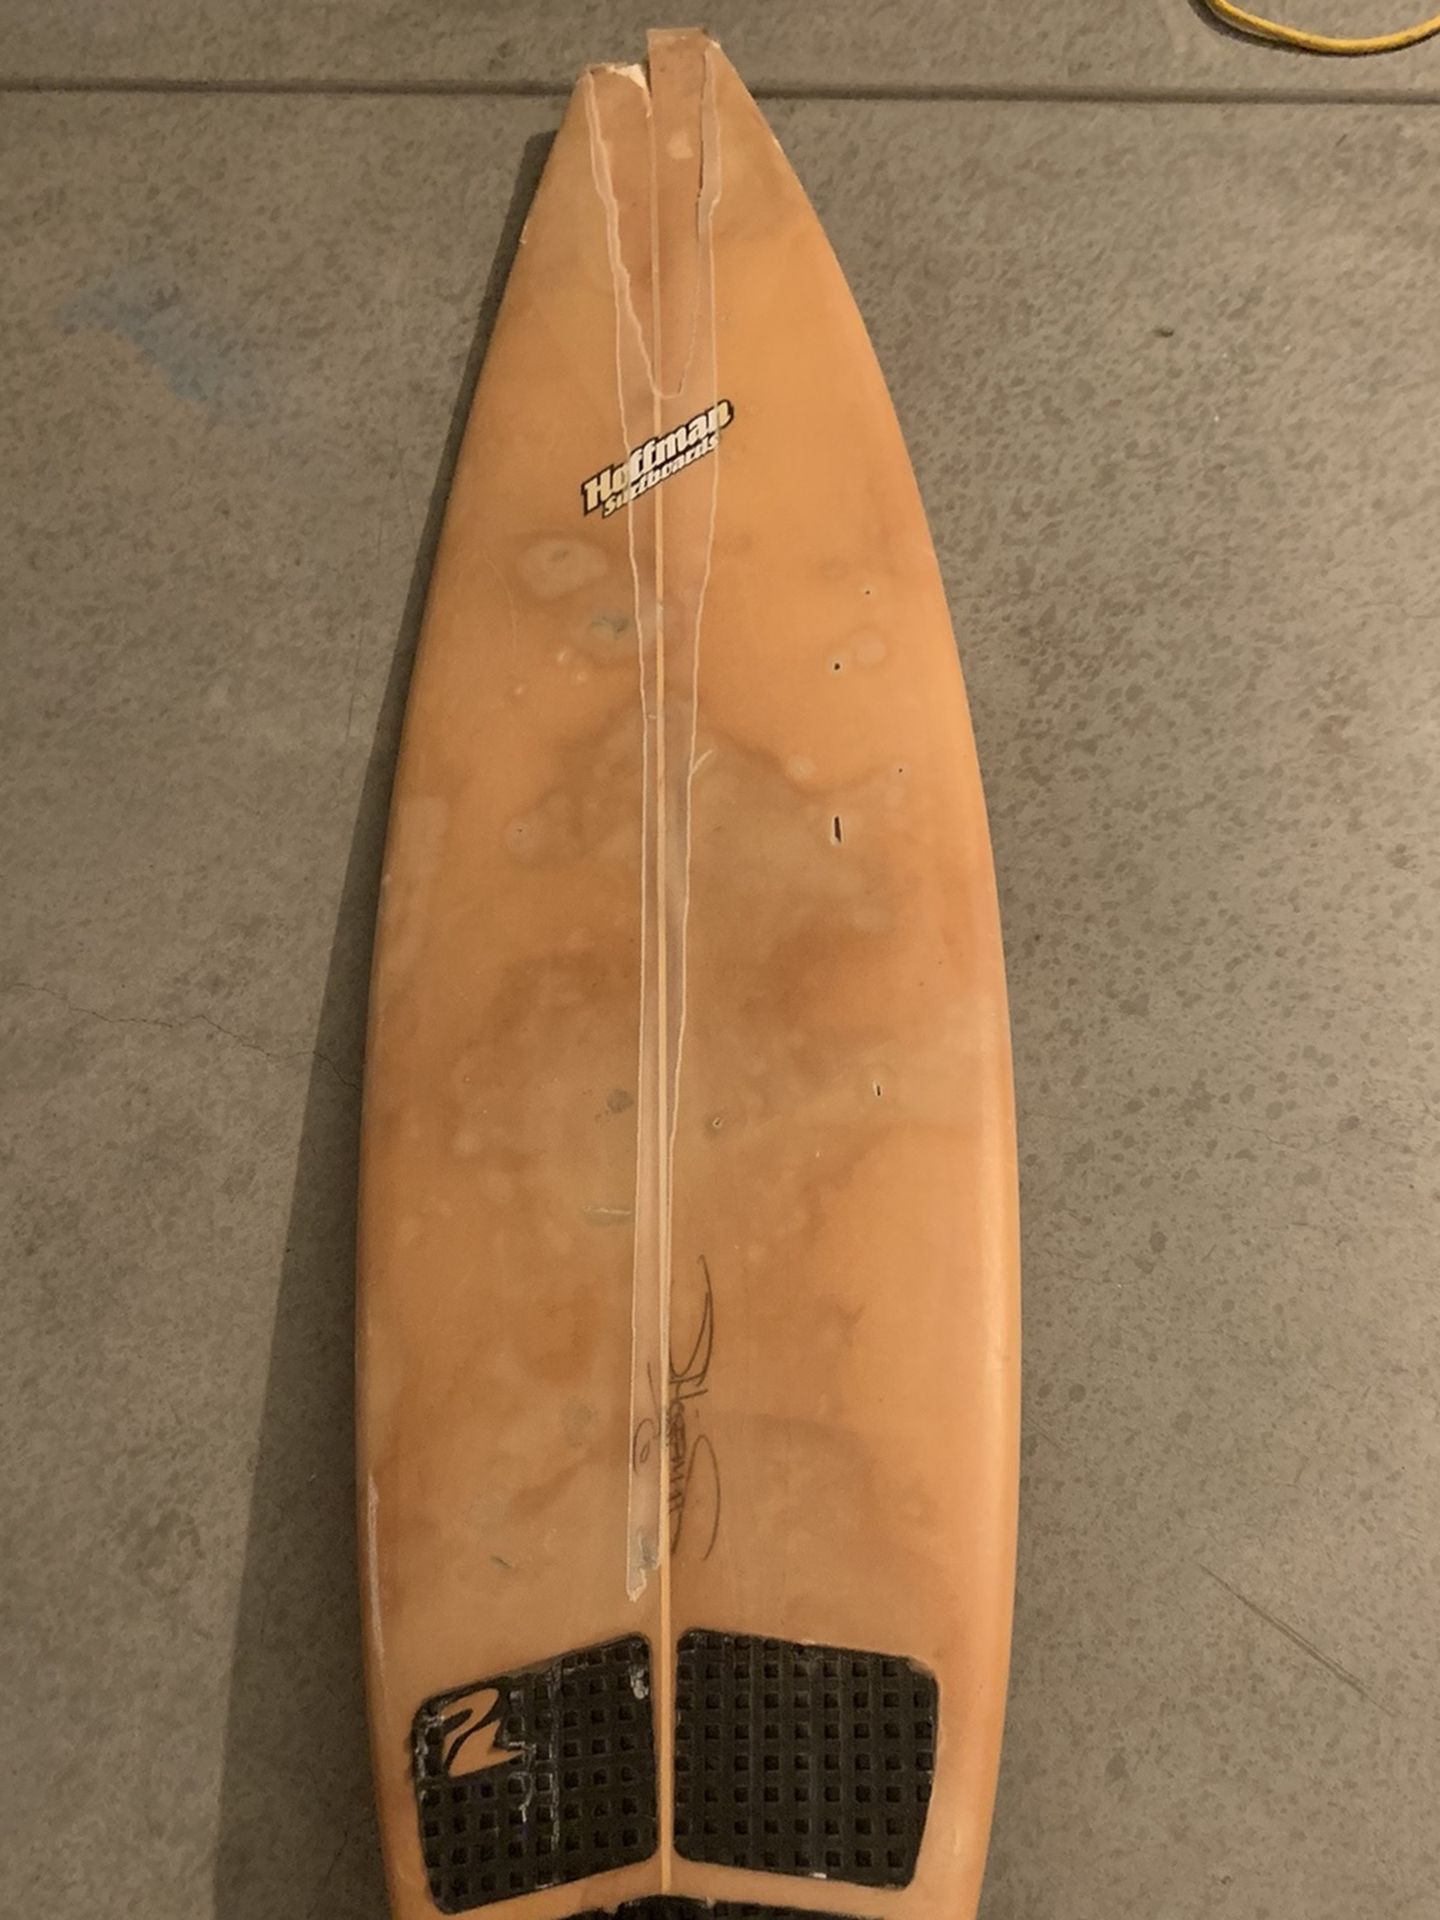 Hoffman surfboard